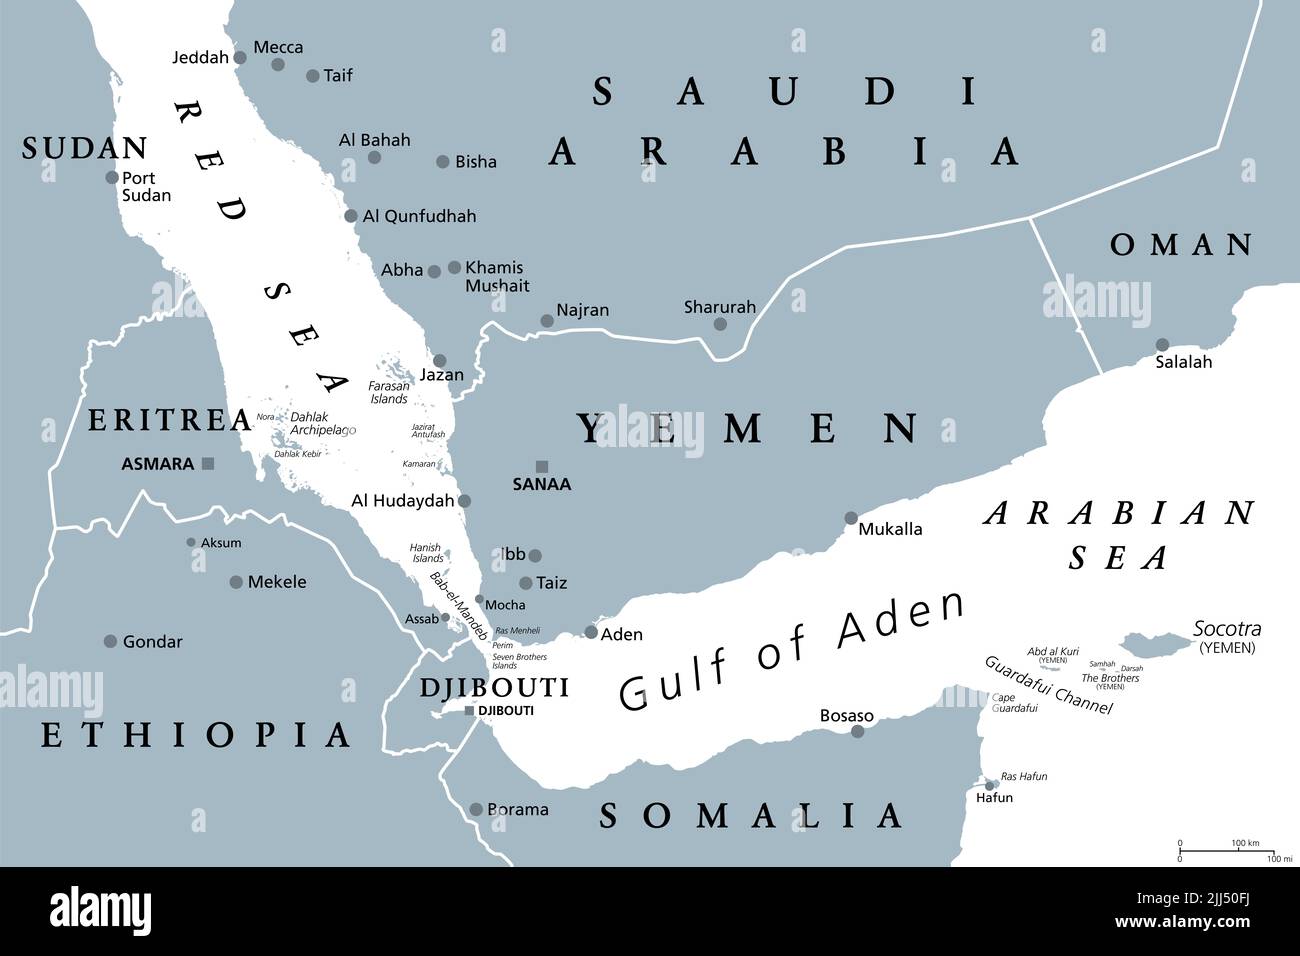 Zona del Golfo de Adén, mapa político gris. Golfo entre Yemen, Yibuti, el Canal de Guardafui, Socotra y Somalia, que conecta el Mar Arábigo con el Mar Rojo. Foto de stock